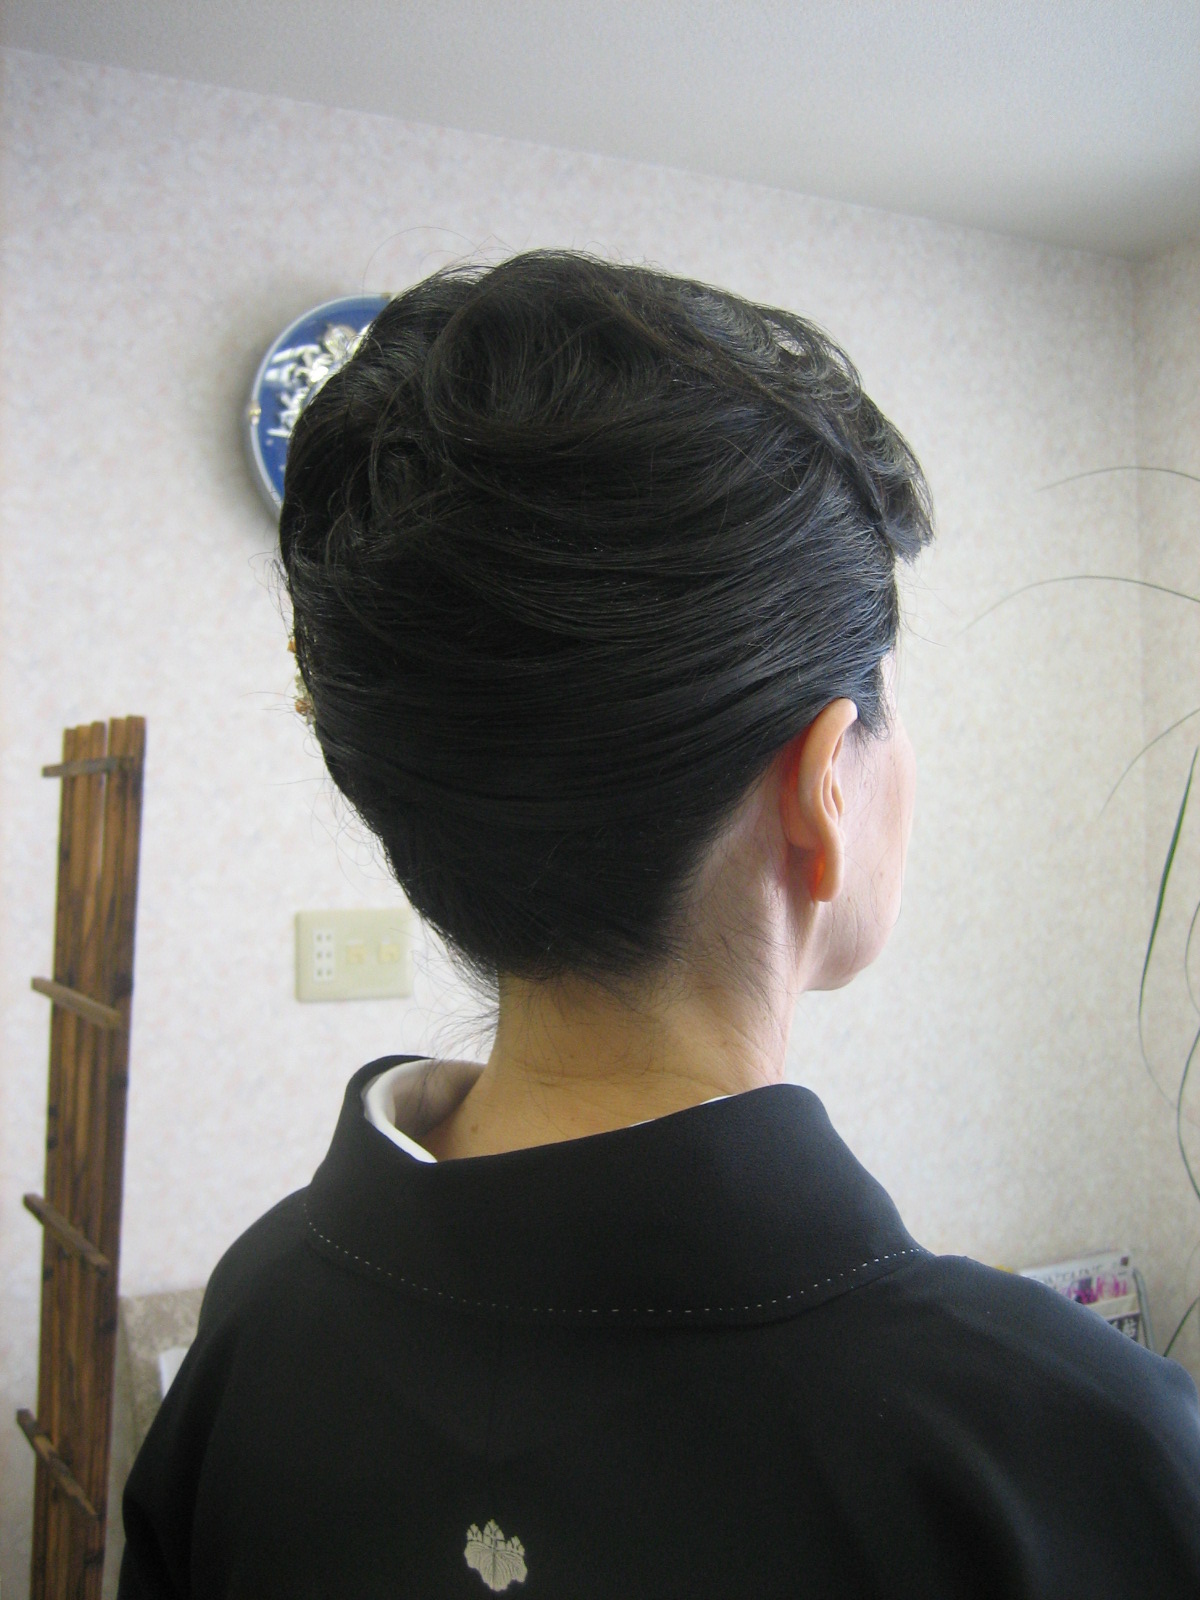 心に強く訴える 50 代 黒留袖 髪型 前髪おろす 最高のヘアスタイルのアイデア